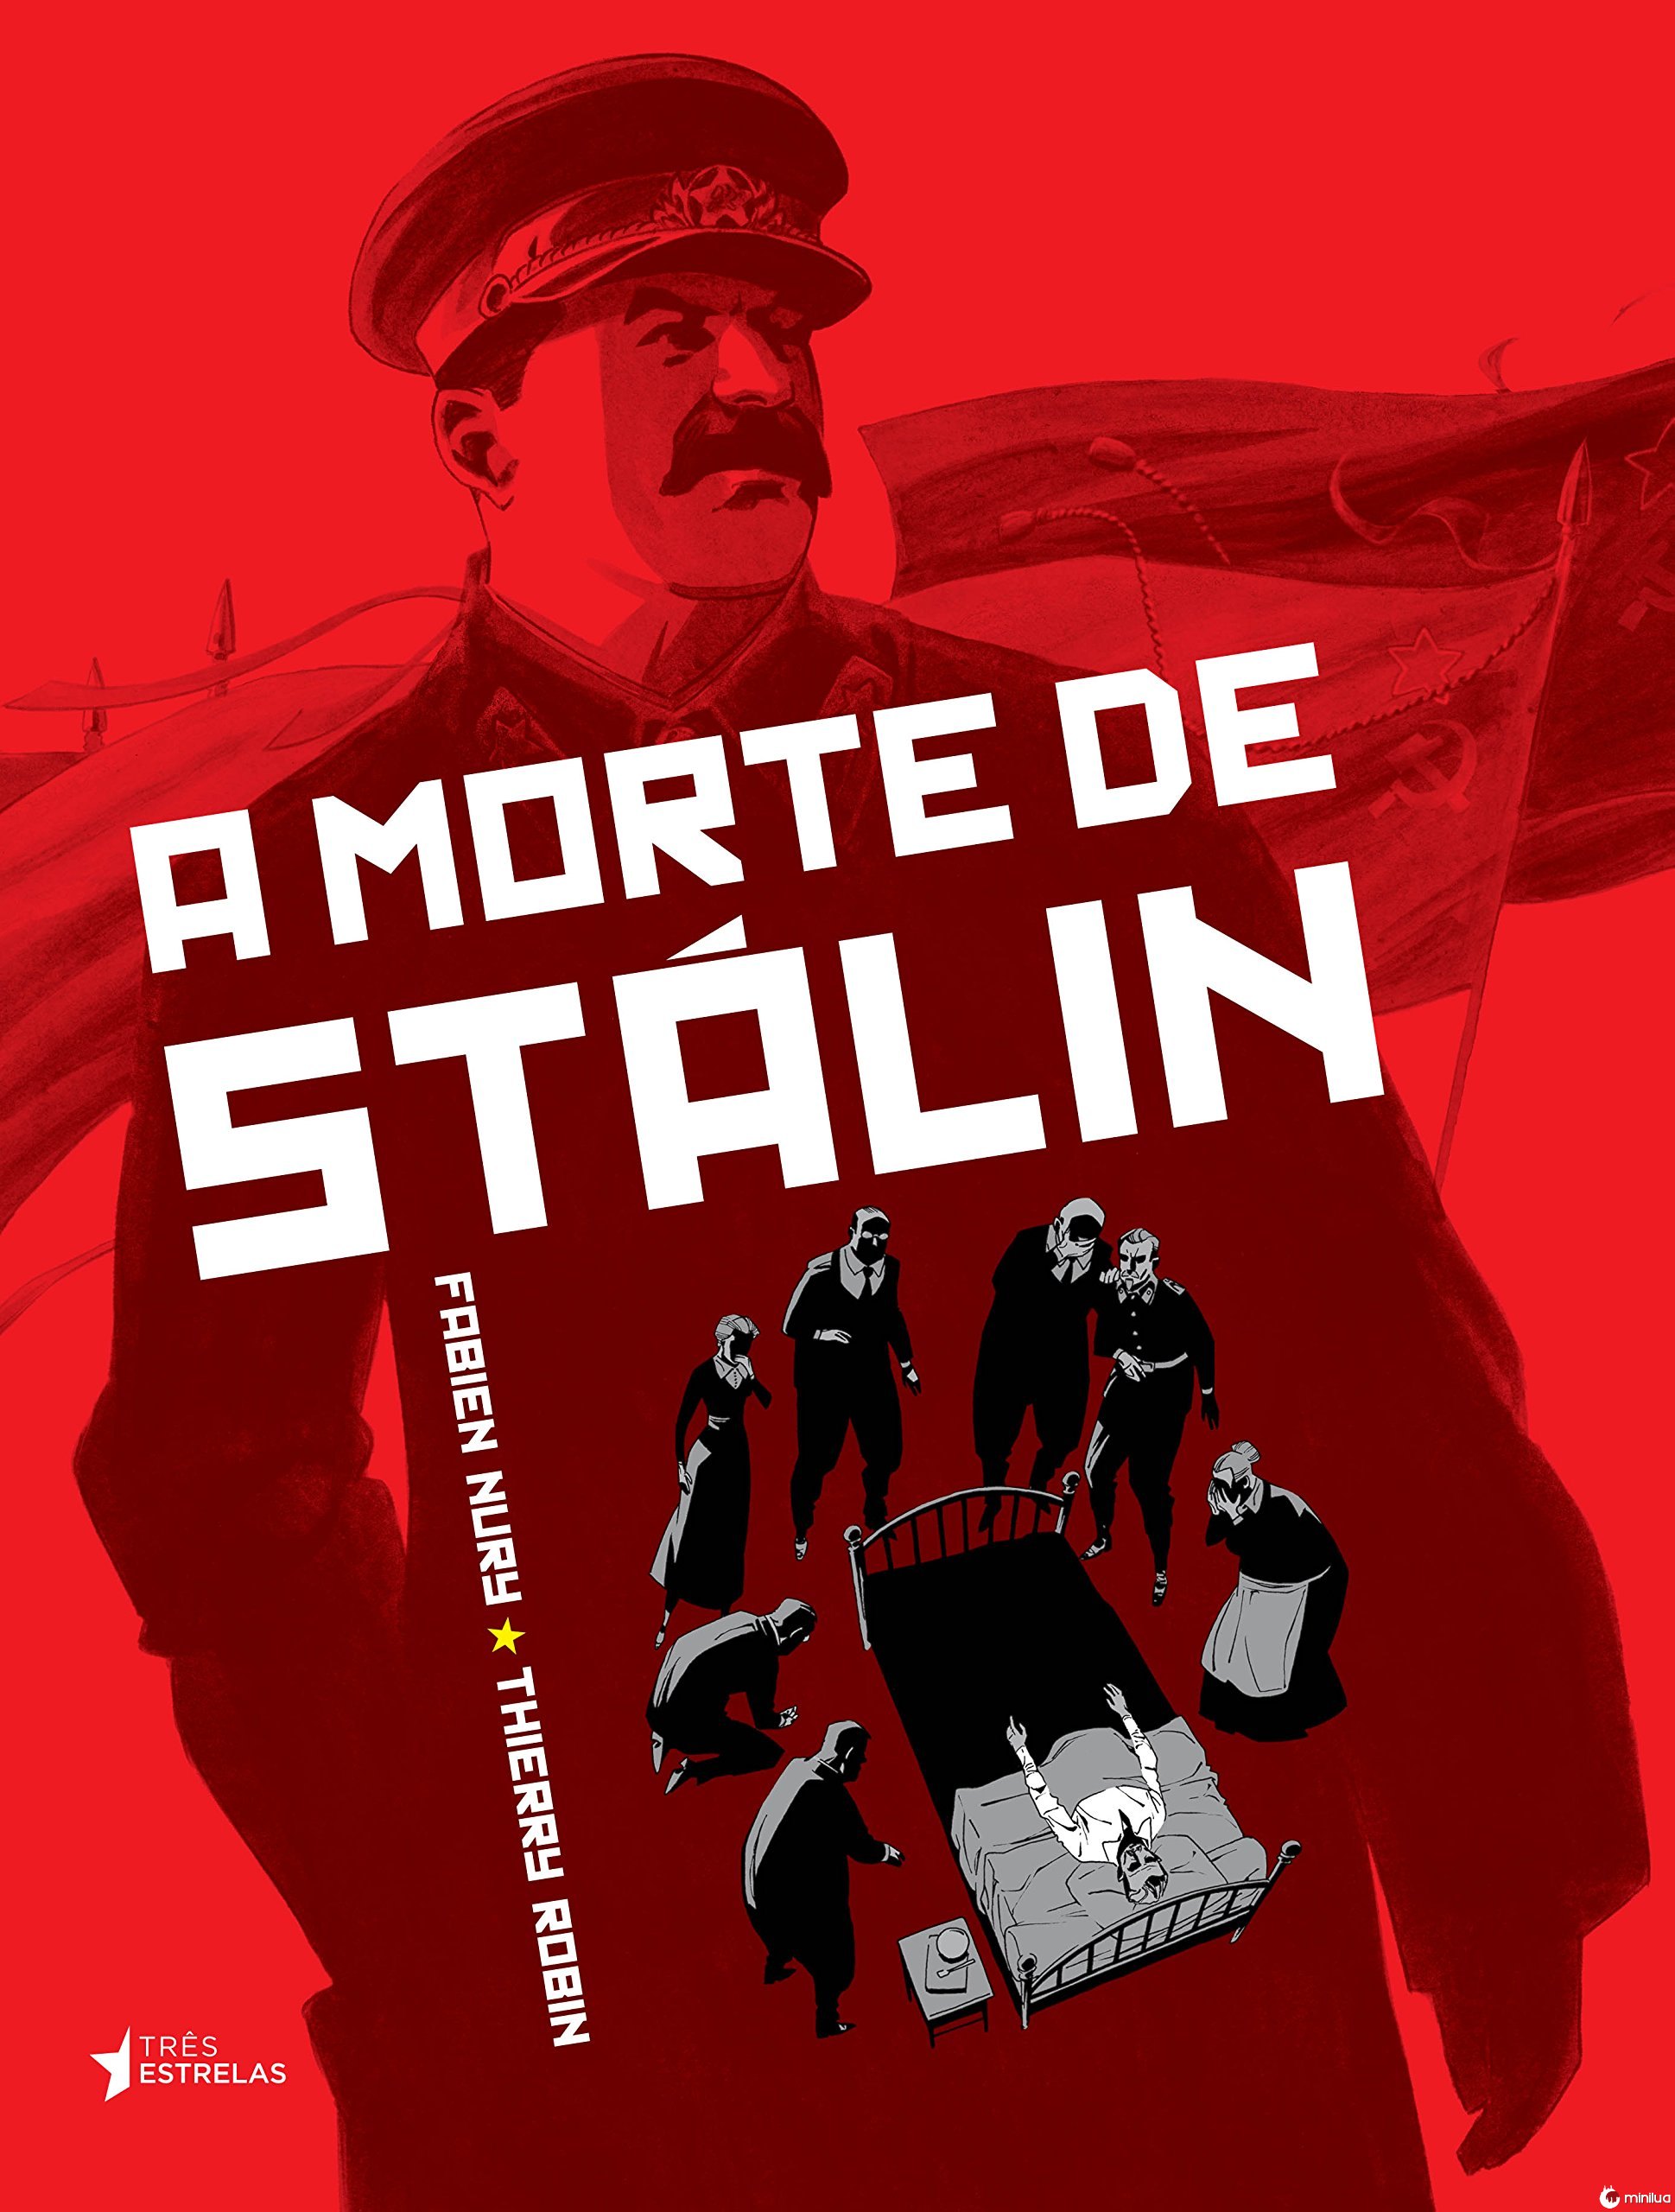 Resultado de imagem para a morte de stalin quadrinhos